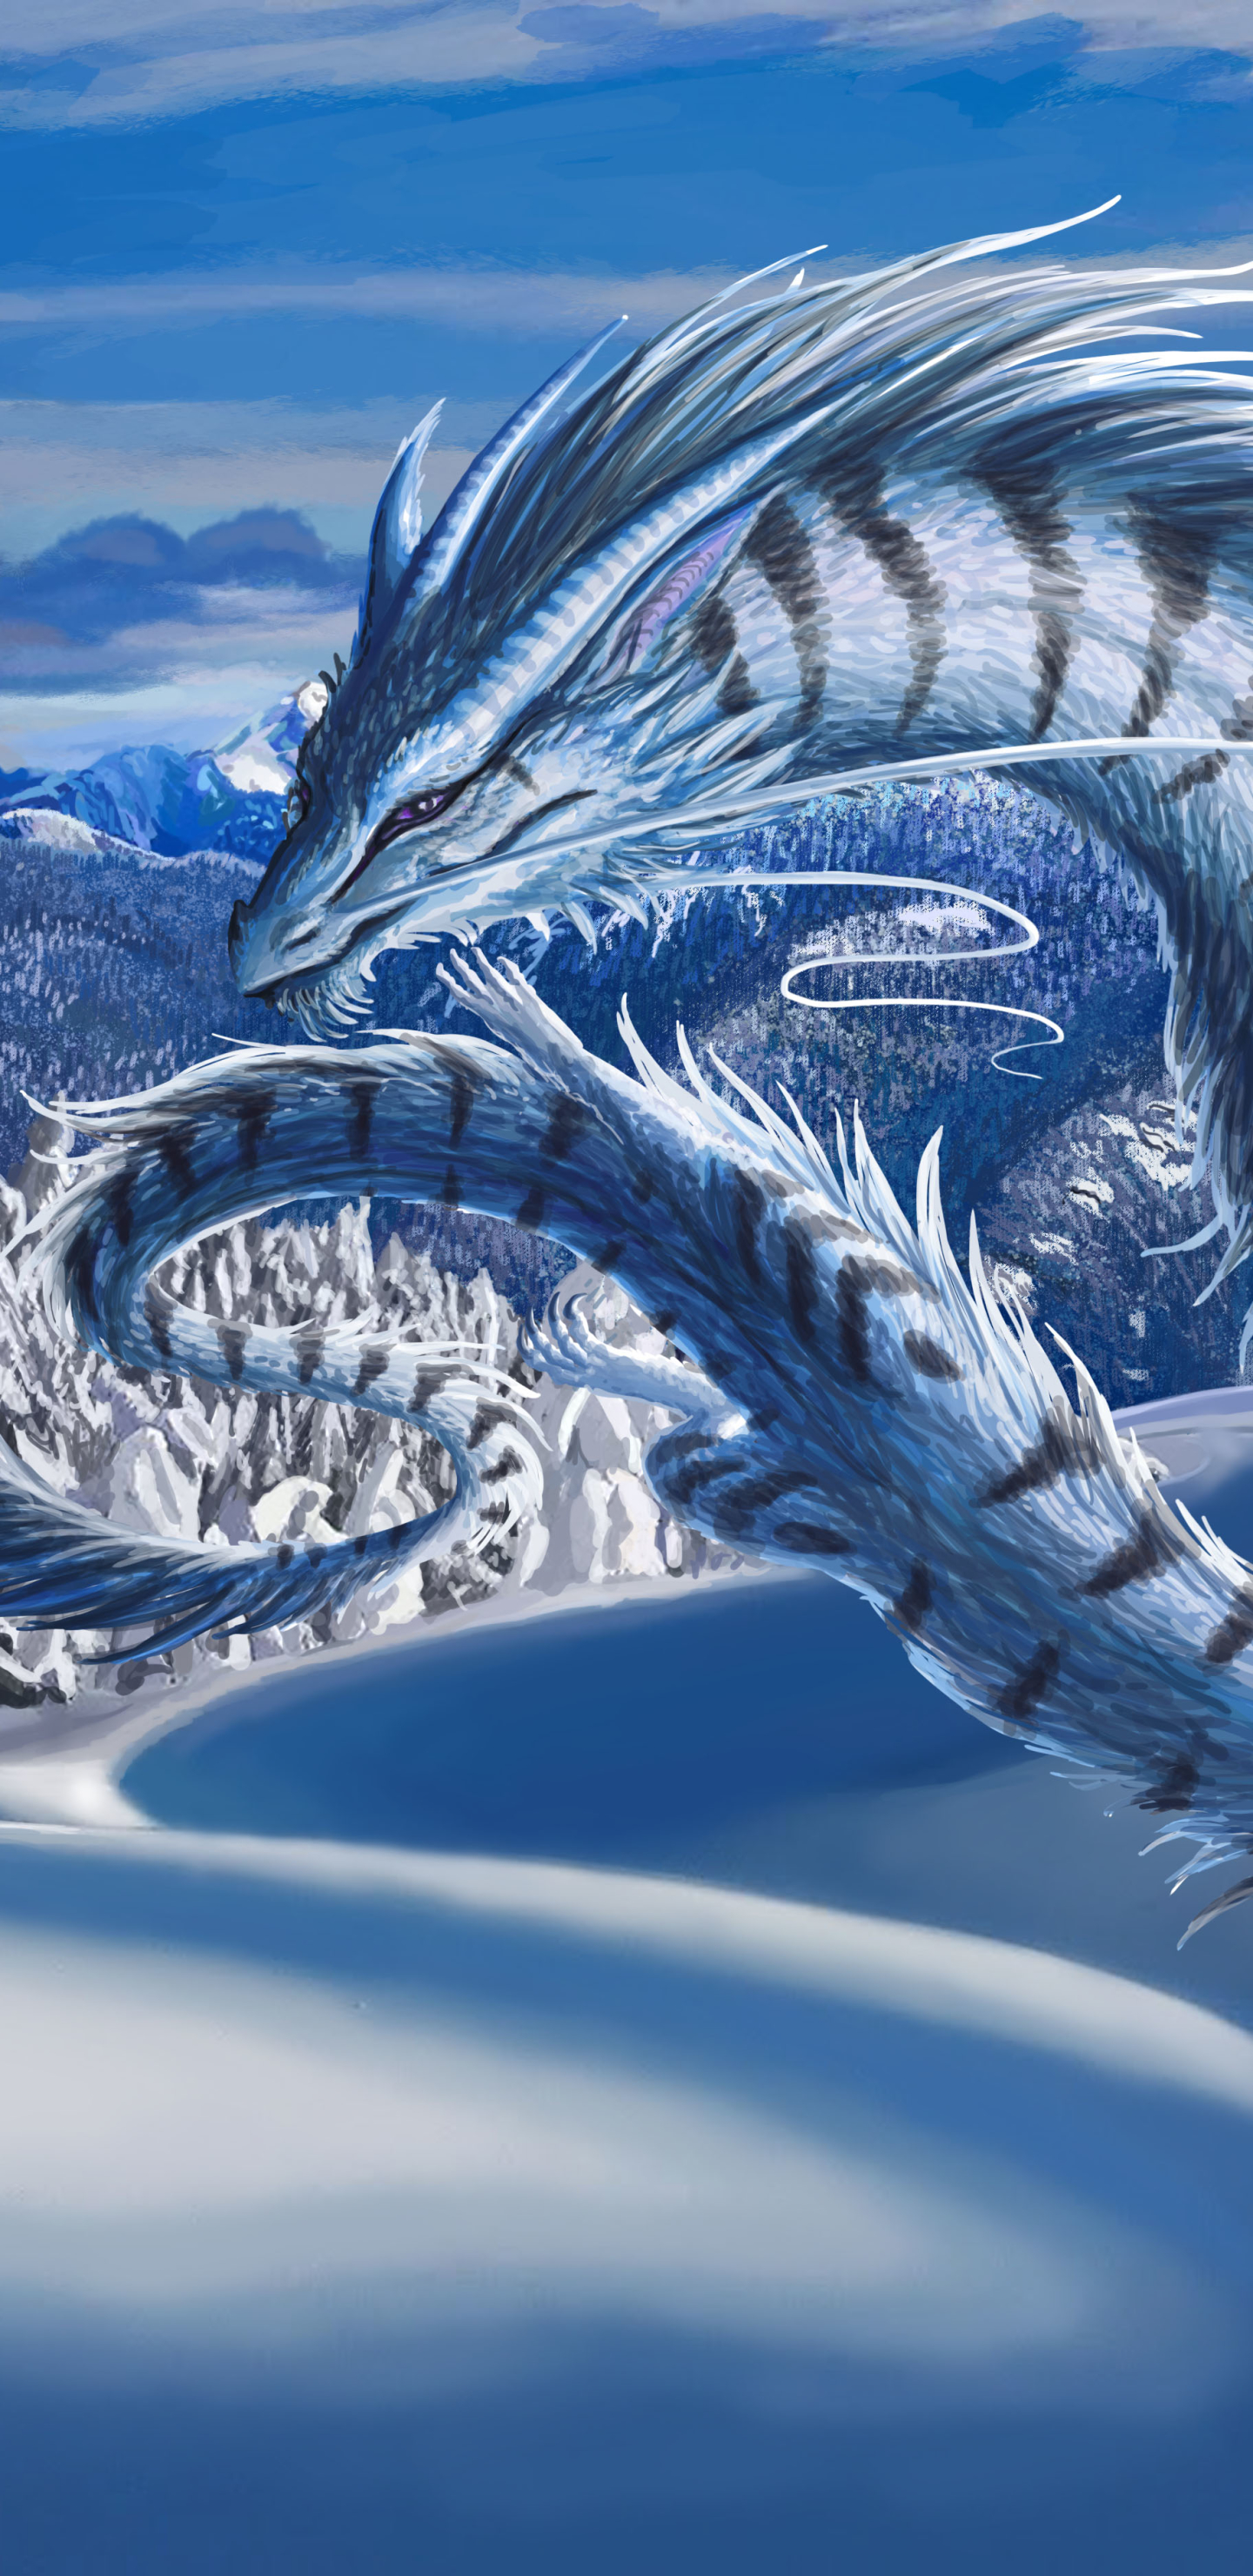 Descarga gratuita de fondo de pantalla para móvil de Invierno, Fantasía, Nieve, Dragón.